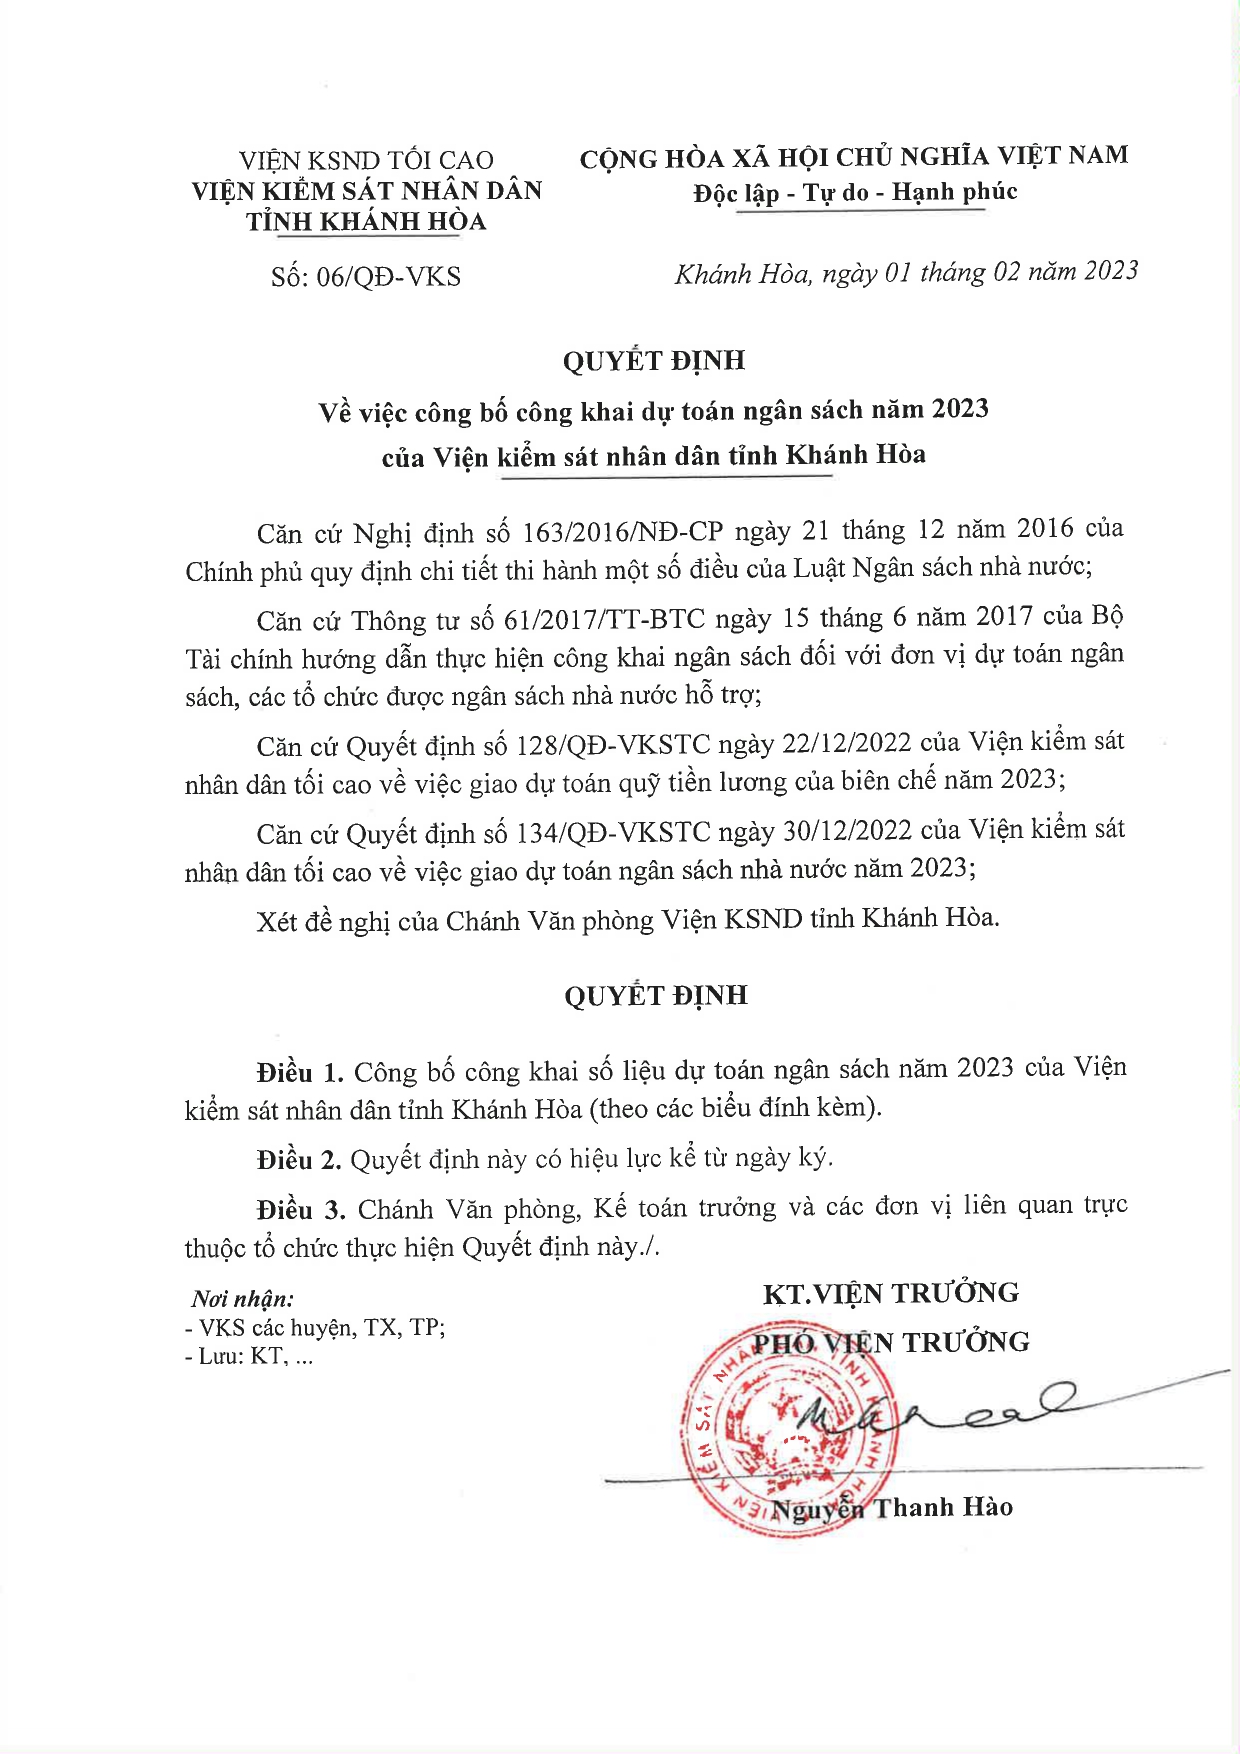 Thông báo về việc công bố công khai dự toán ngân sách năm 2023 của Viện kiểm sát nhân dân tỉnh Khánh Hòa